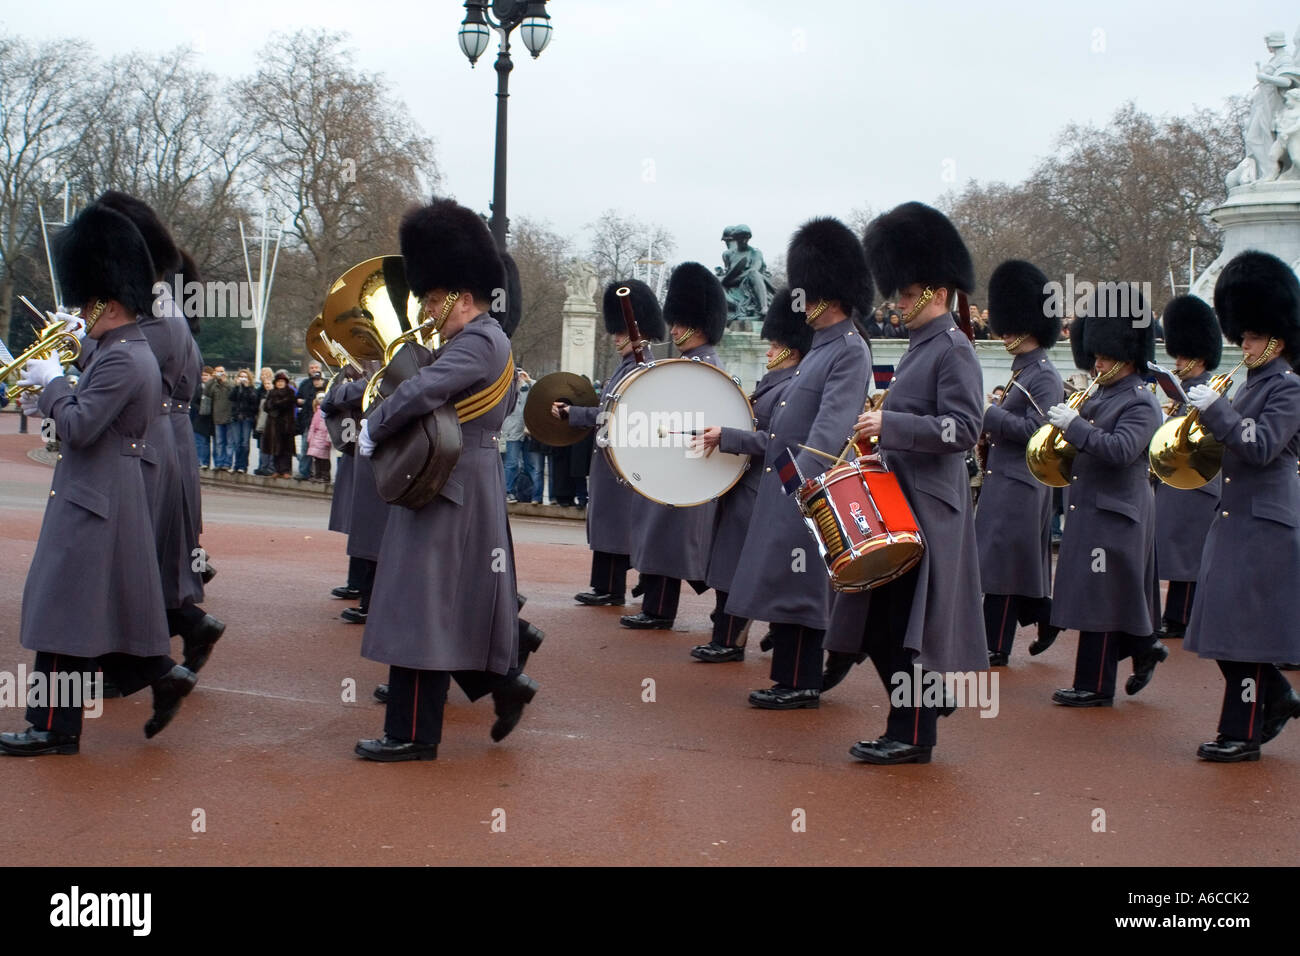 Changement de la garde de Buckingham Palace Londres Angleterre Parade Banque D'Images